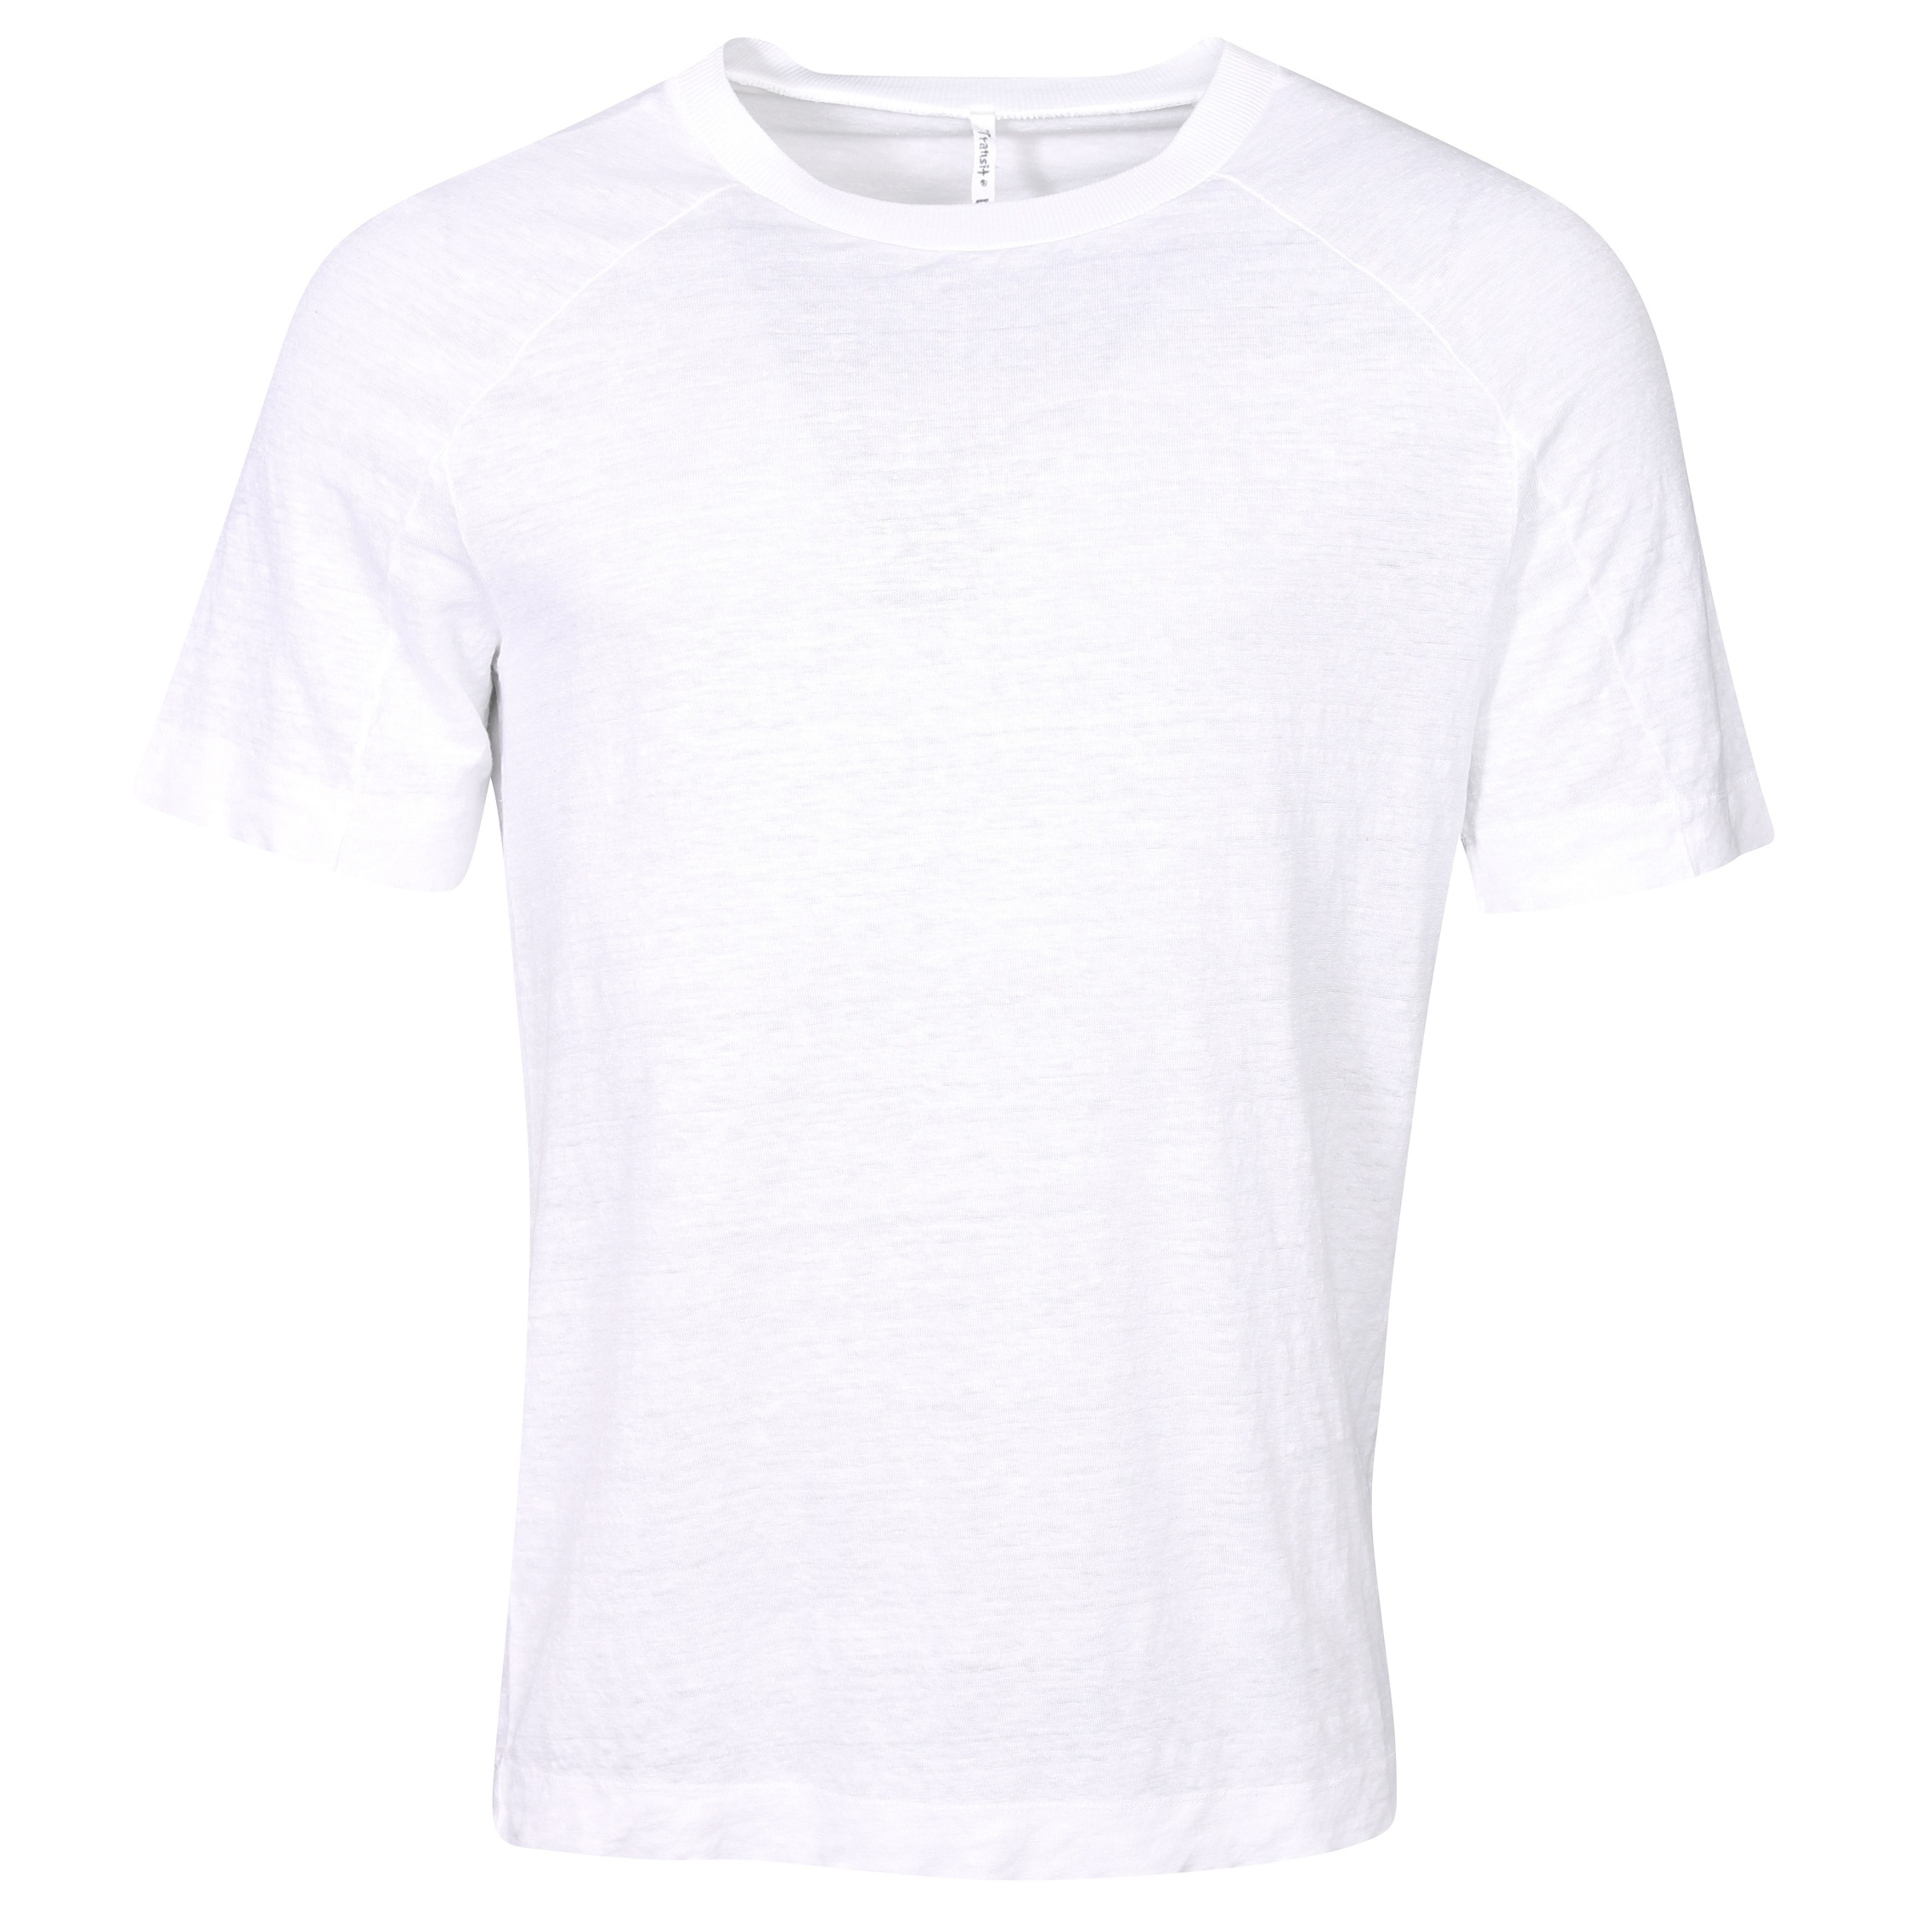 TRANSIT UOMO Hemp T-Shirt in White L